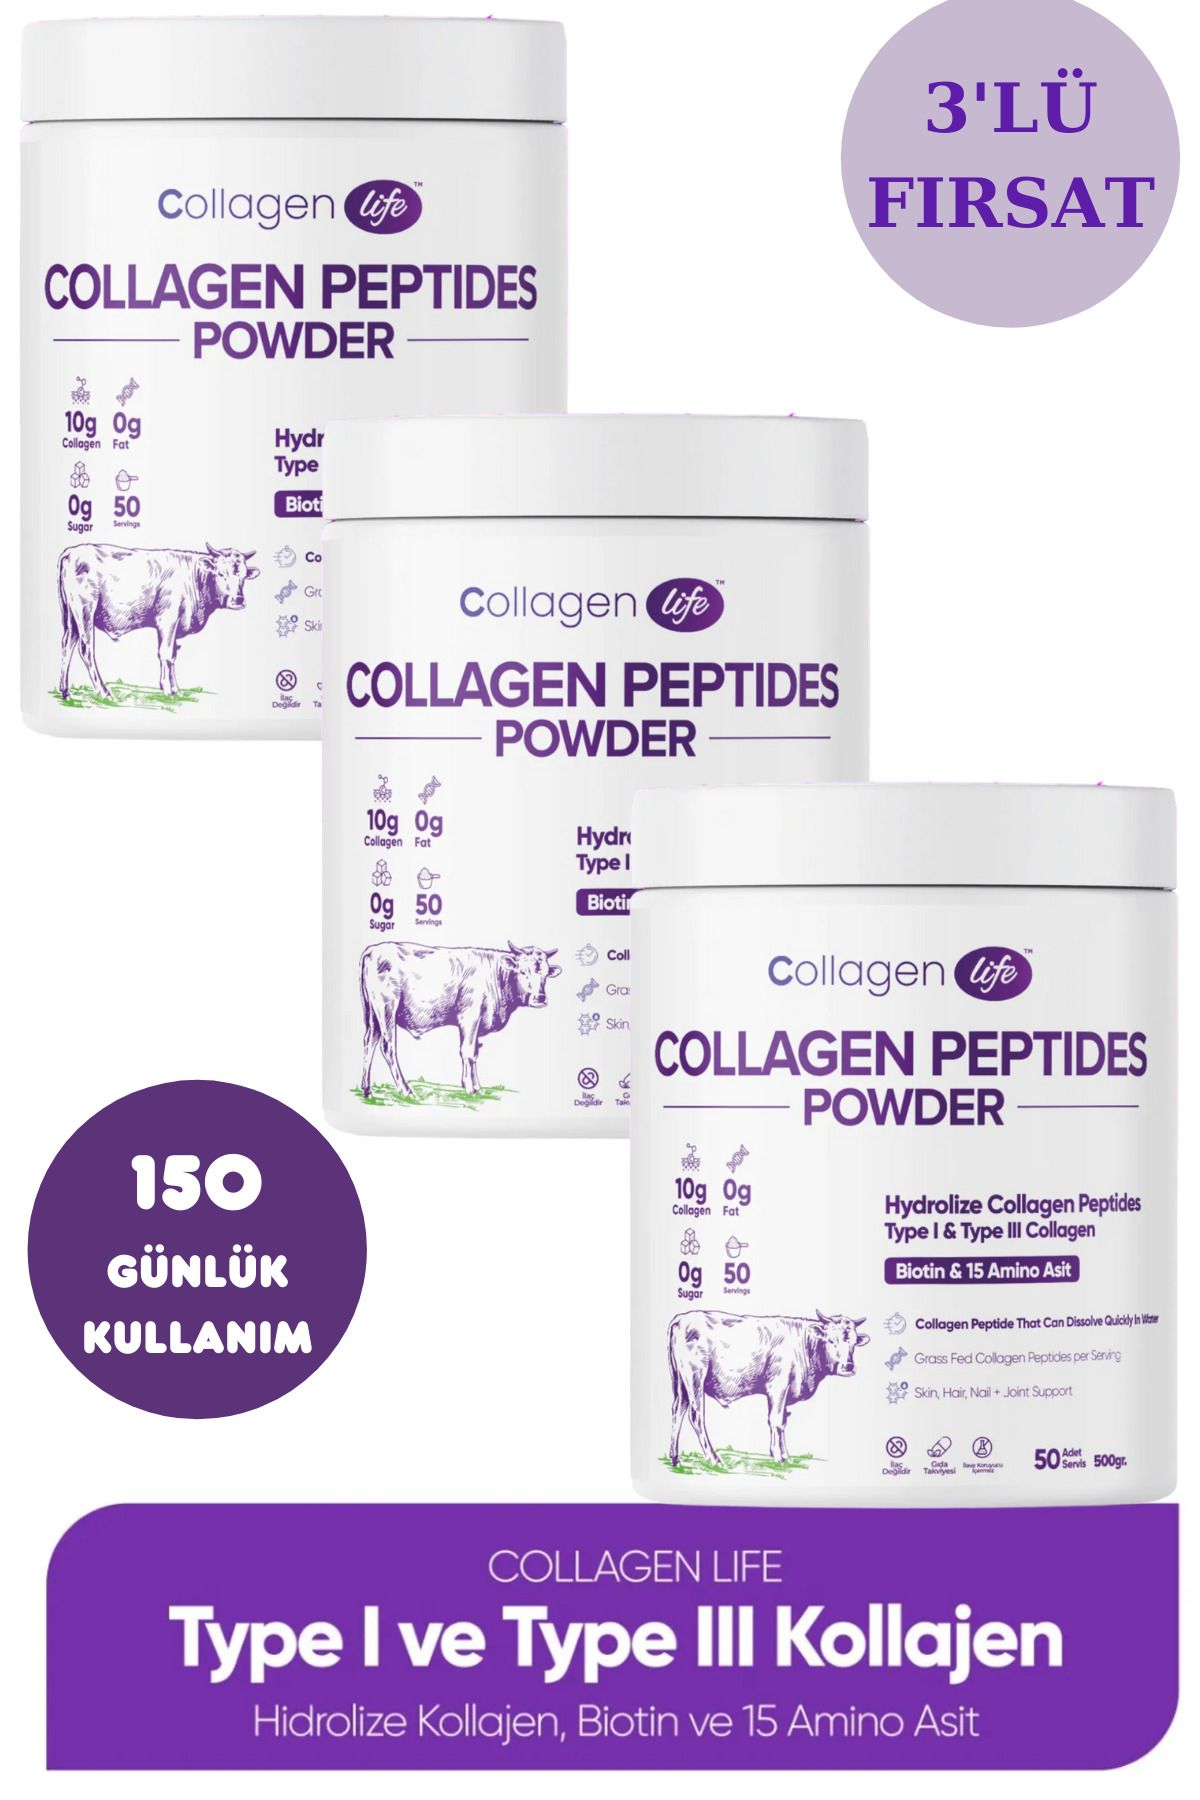 Collagen Life Hidrolize Kolajen Peptitler Biotin Ve 15 Amino Asit İçeren Gıda Takviyesi 3'Lü Set